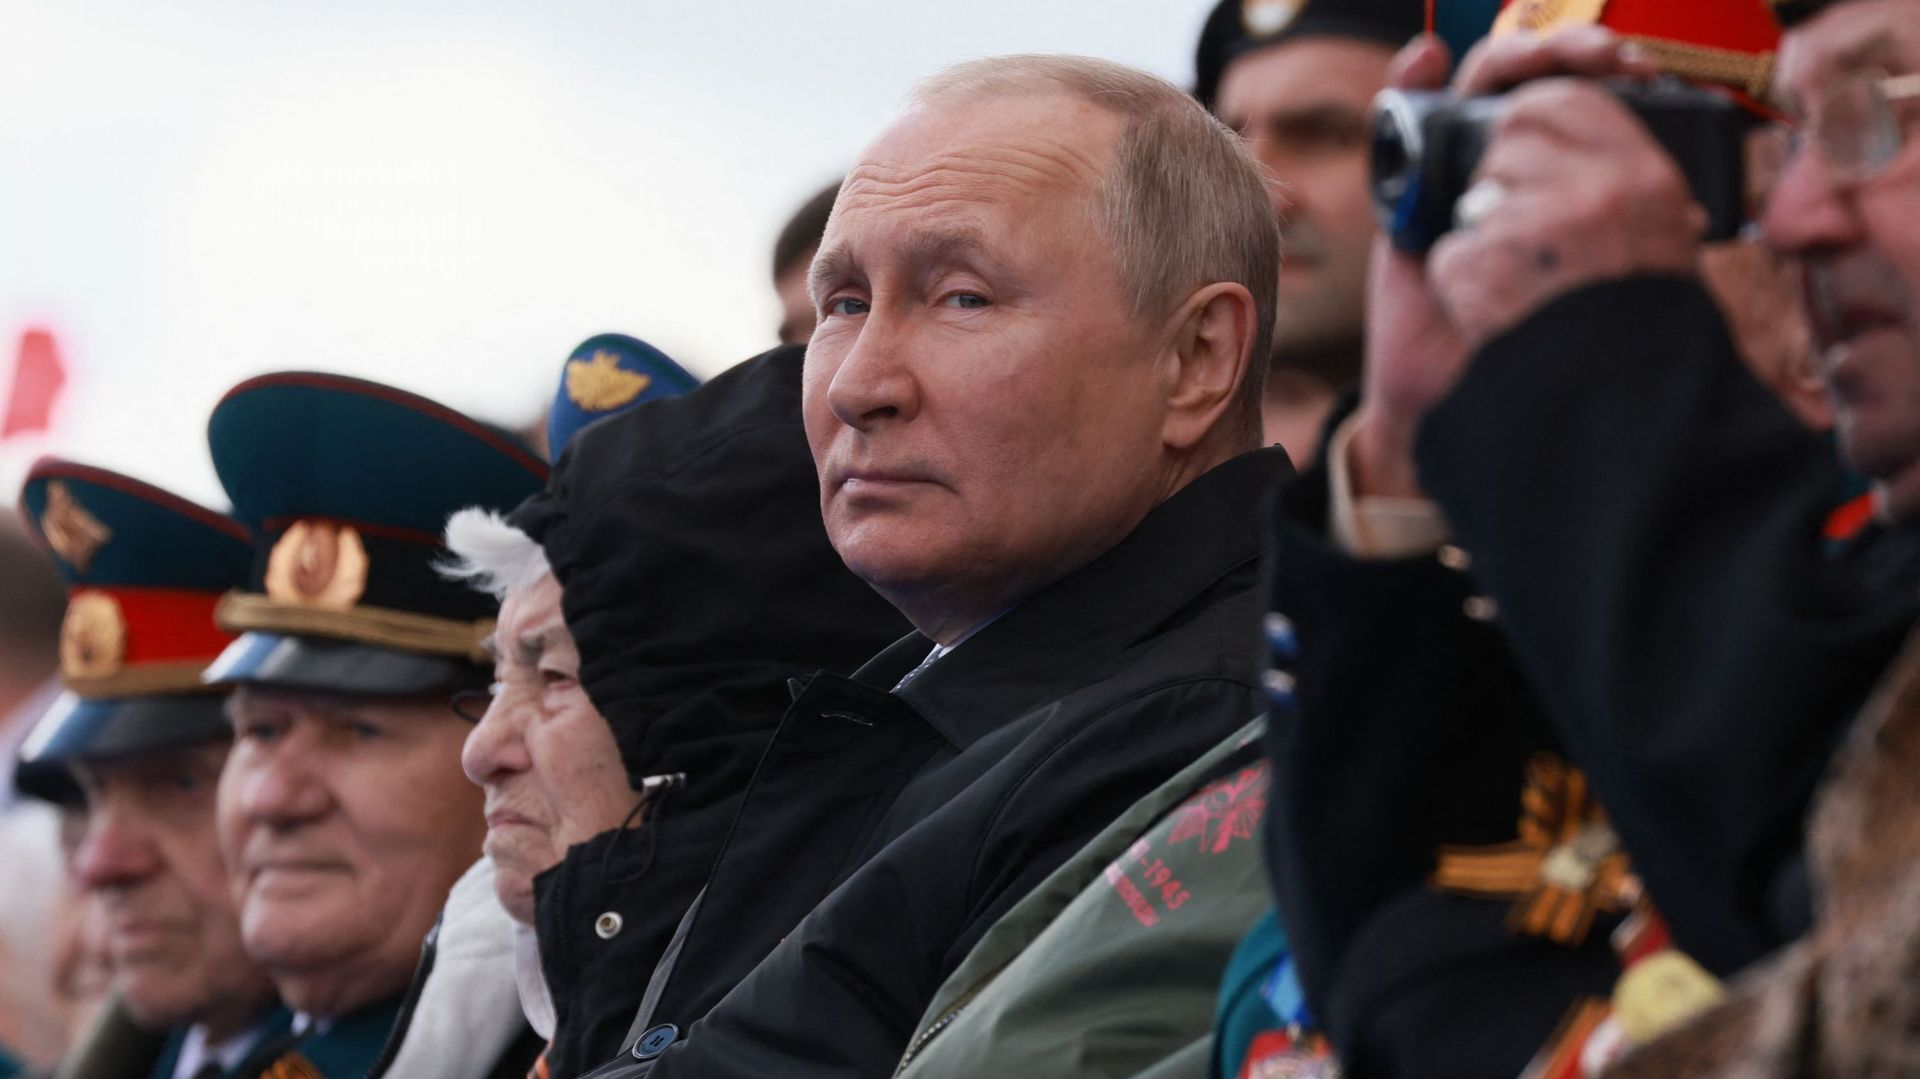 Le président russe Vladimir Poutine assiste à la parade militaire du Jour de la Victoire sur la Place Rouge de Moscou, le 9 mai 2022. – Image d’illustration.